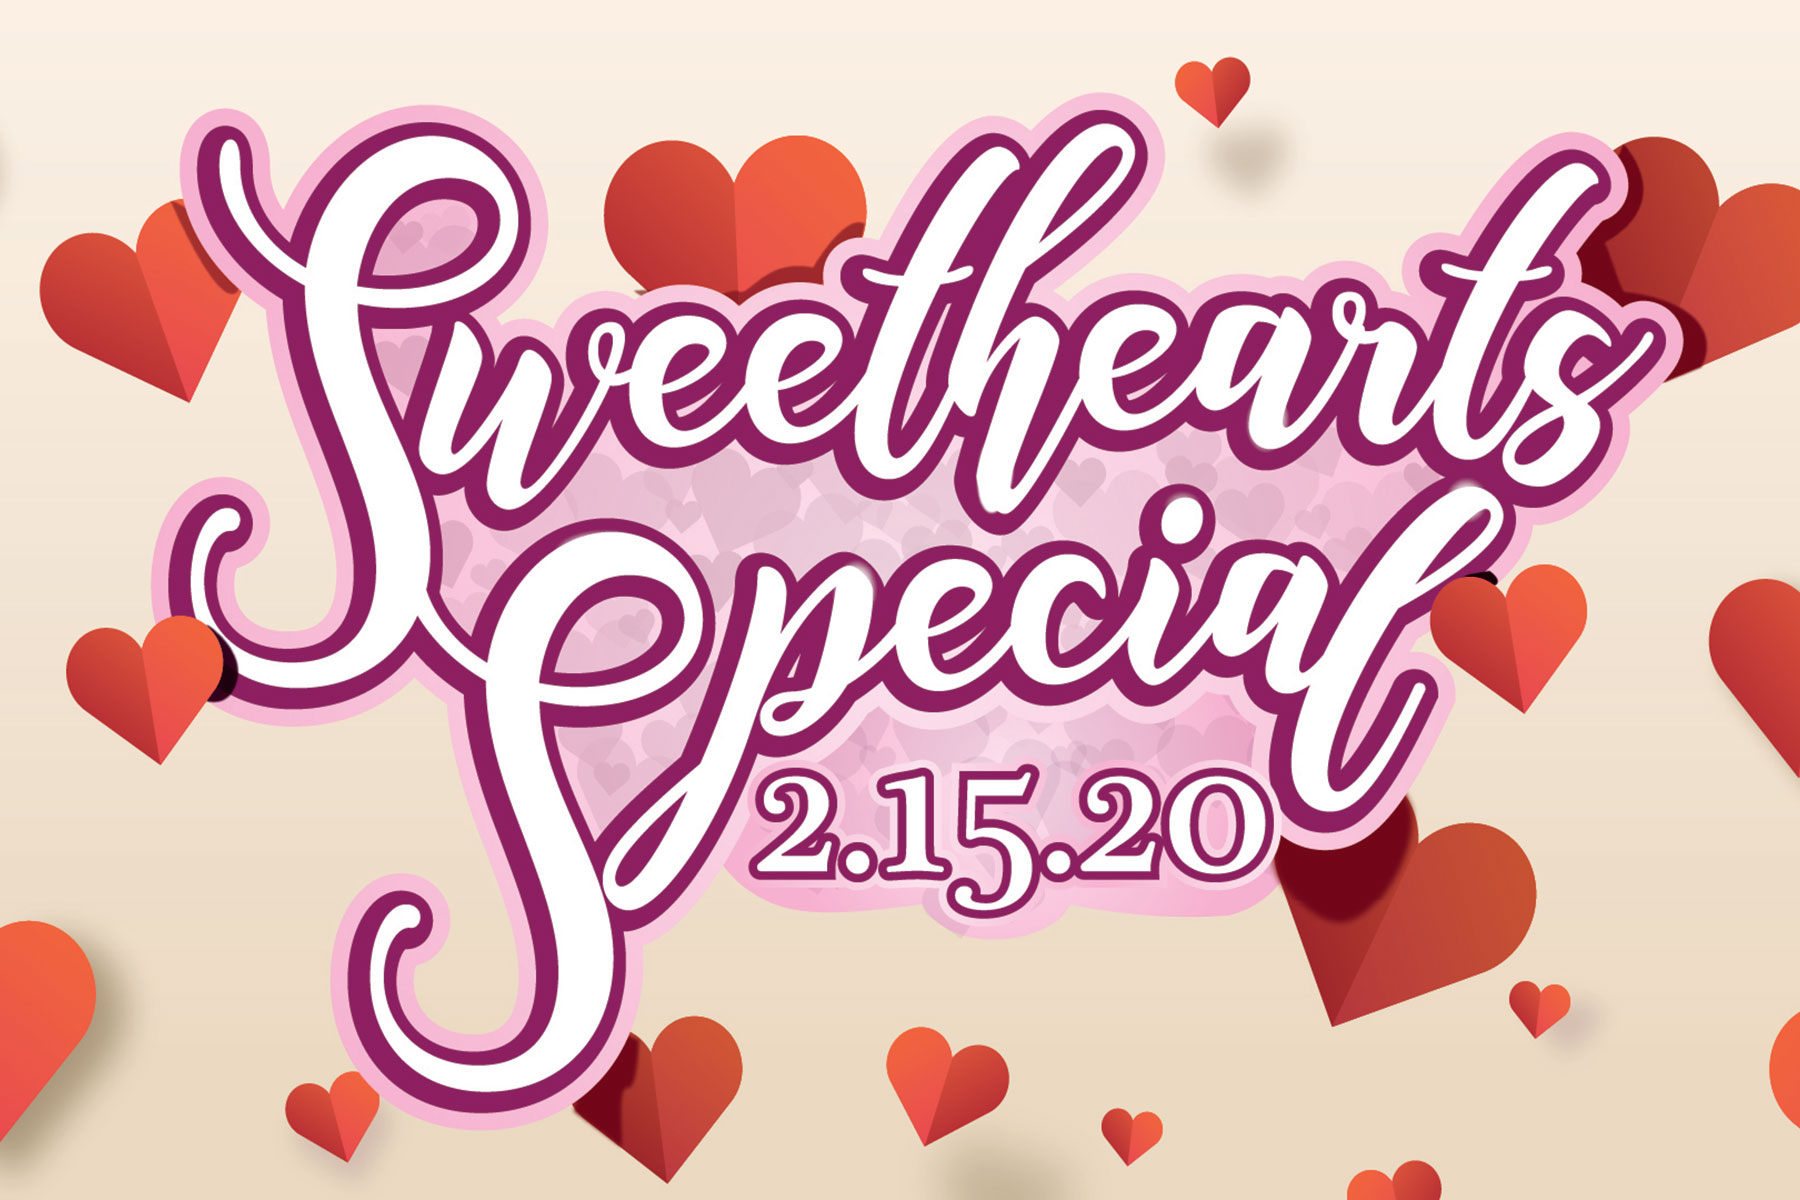 Bingo Sweethearts Special